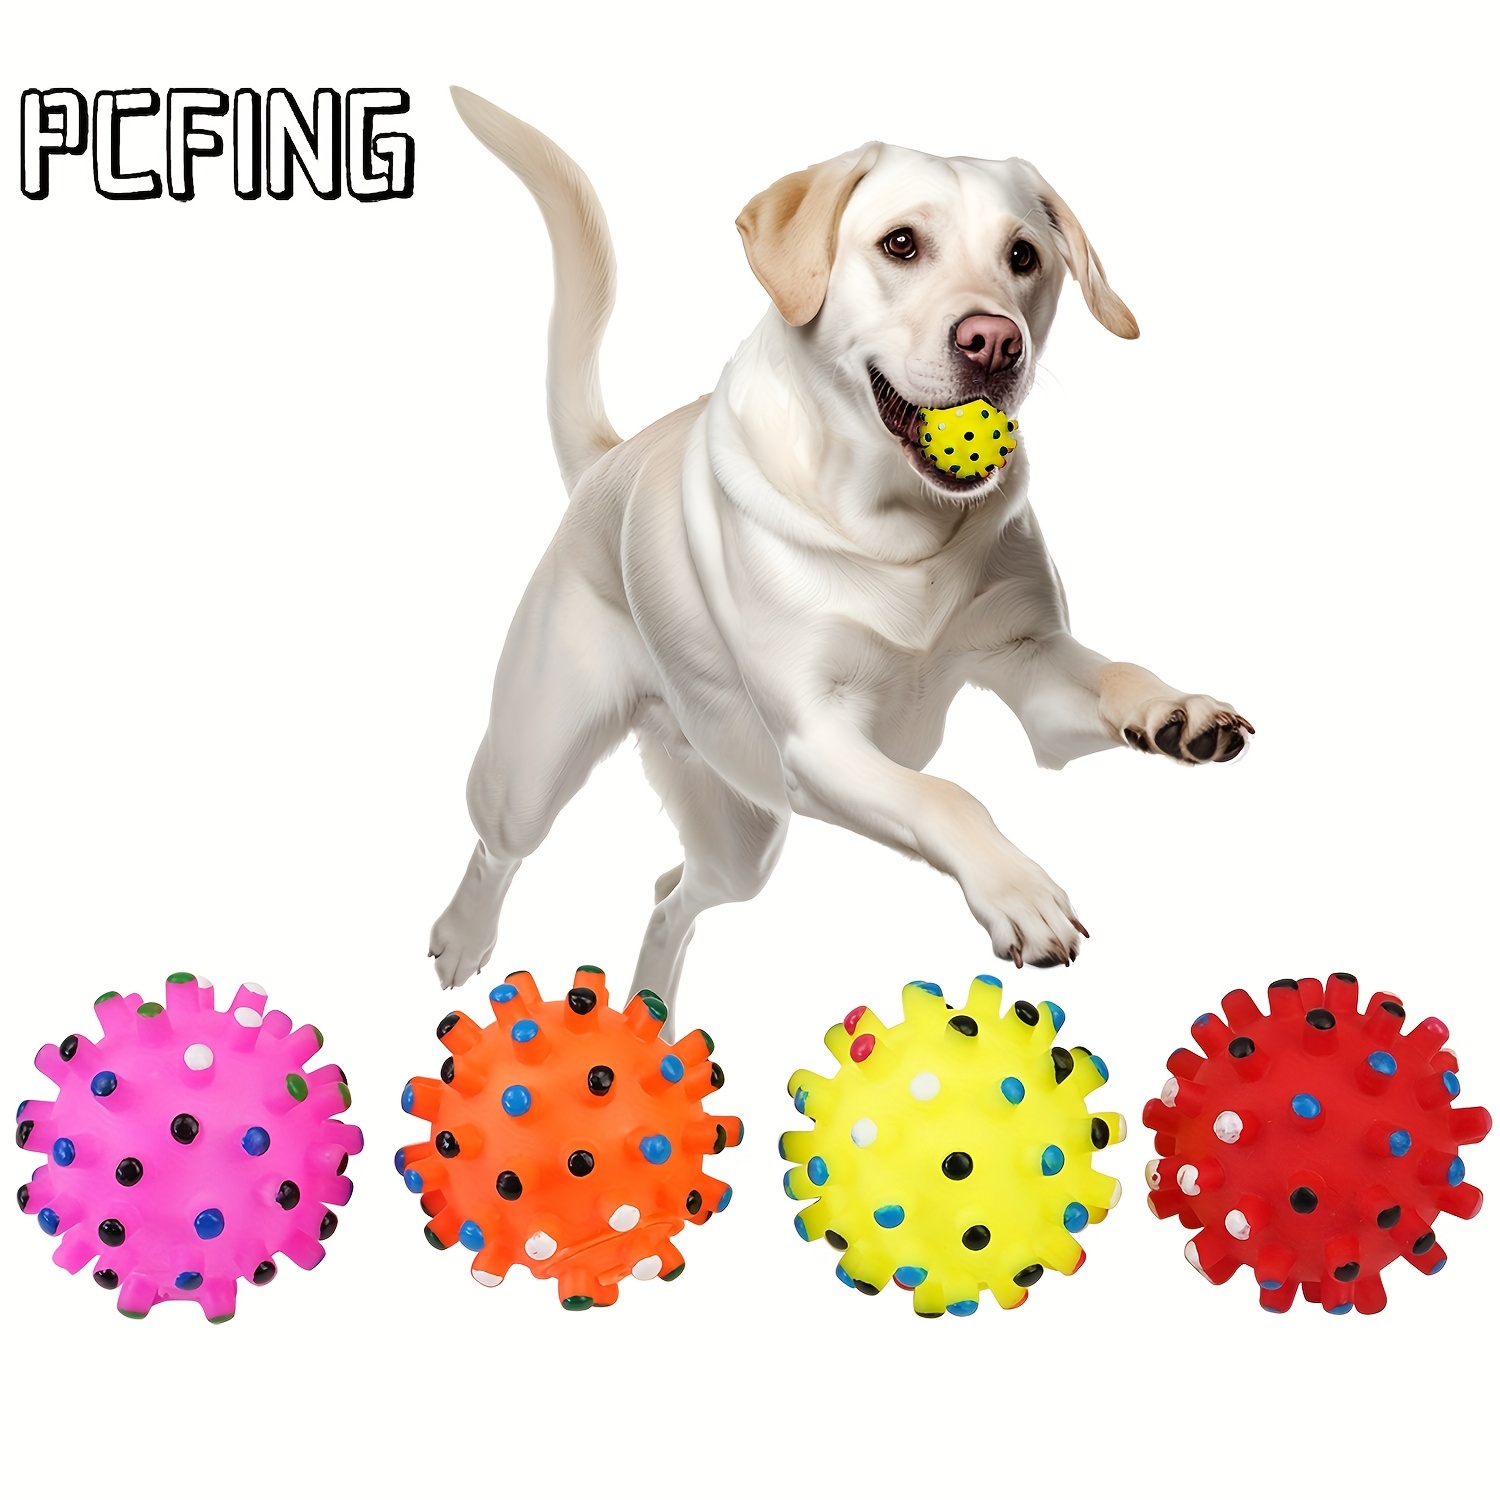 Estación de juegos para perros con puzle interactivo – Tienda Petfy